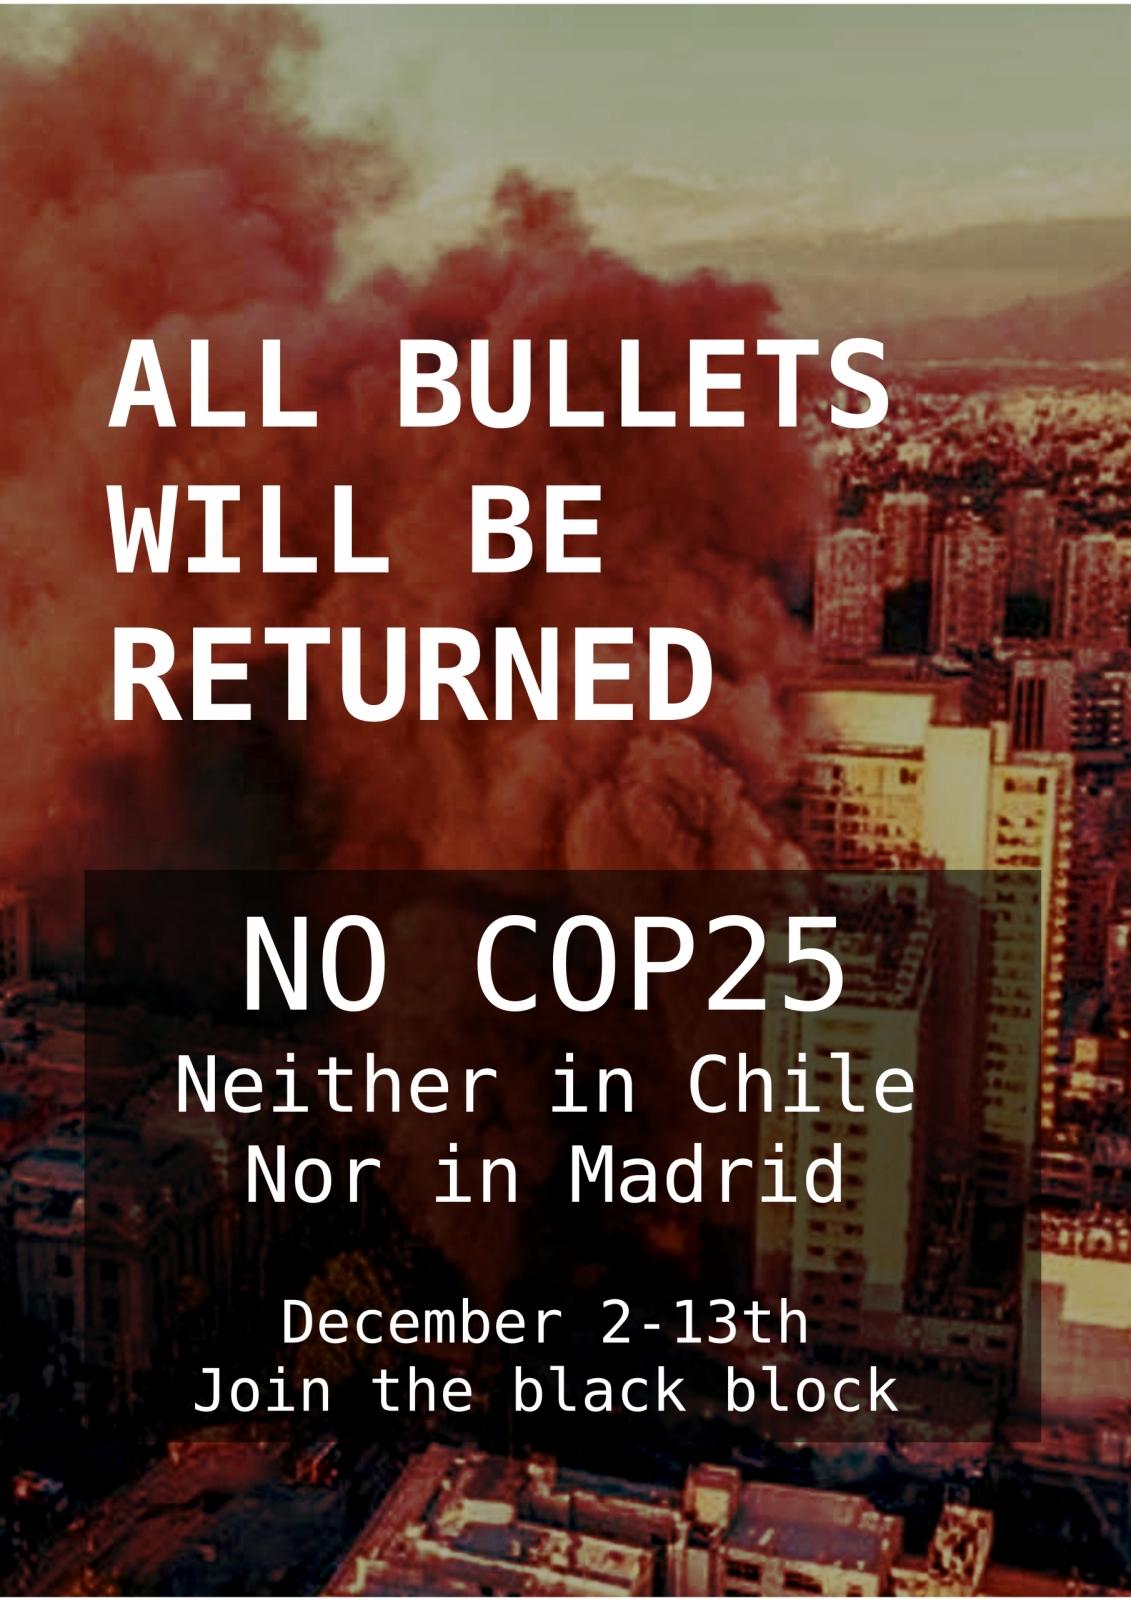 Madrid, Spagna: No COP25 – Tutti i proiettili saranno restituiti